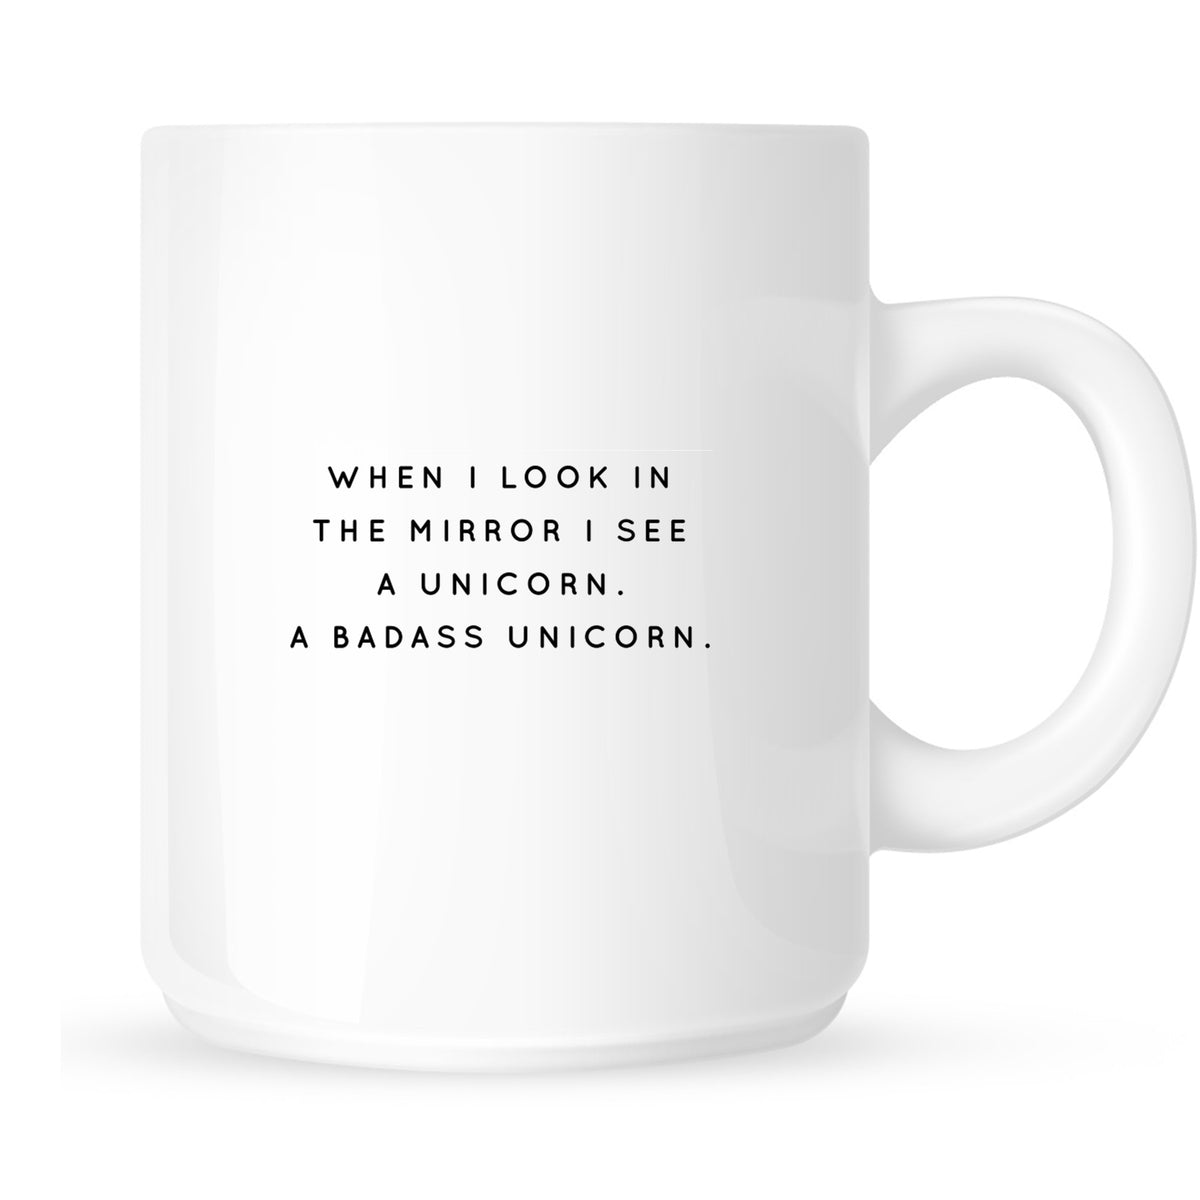 Mug - When I Look in the Mirror I See a Unicorn. A Badass Unicorn.